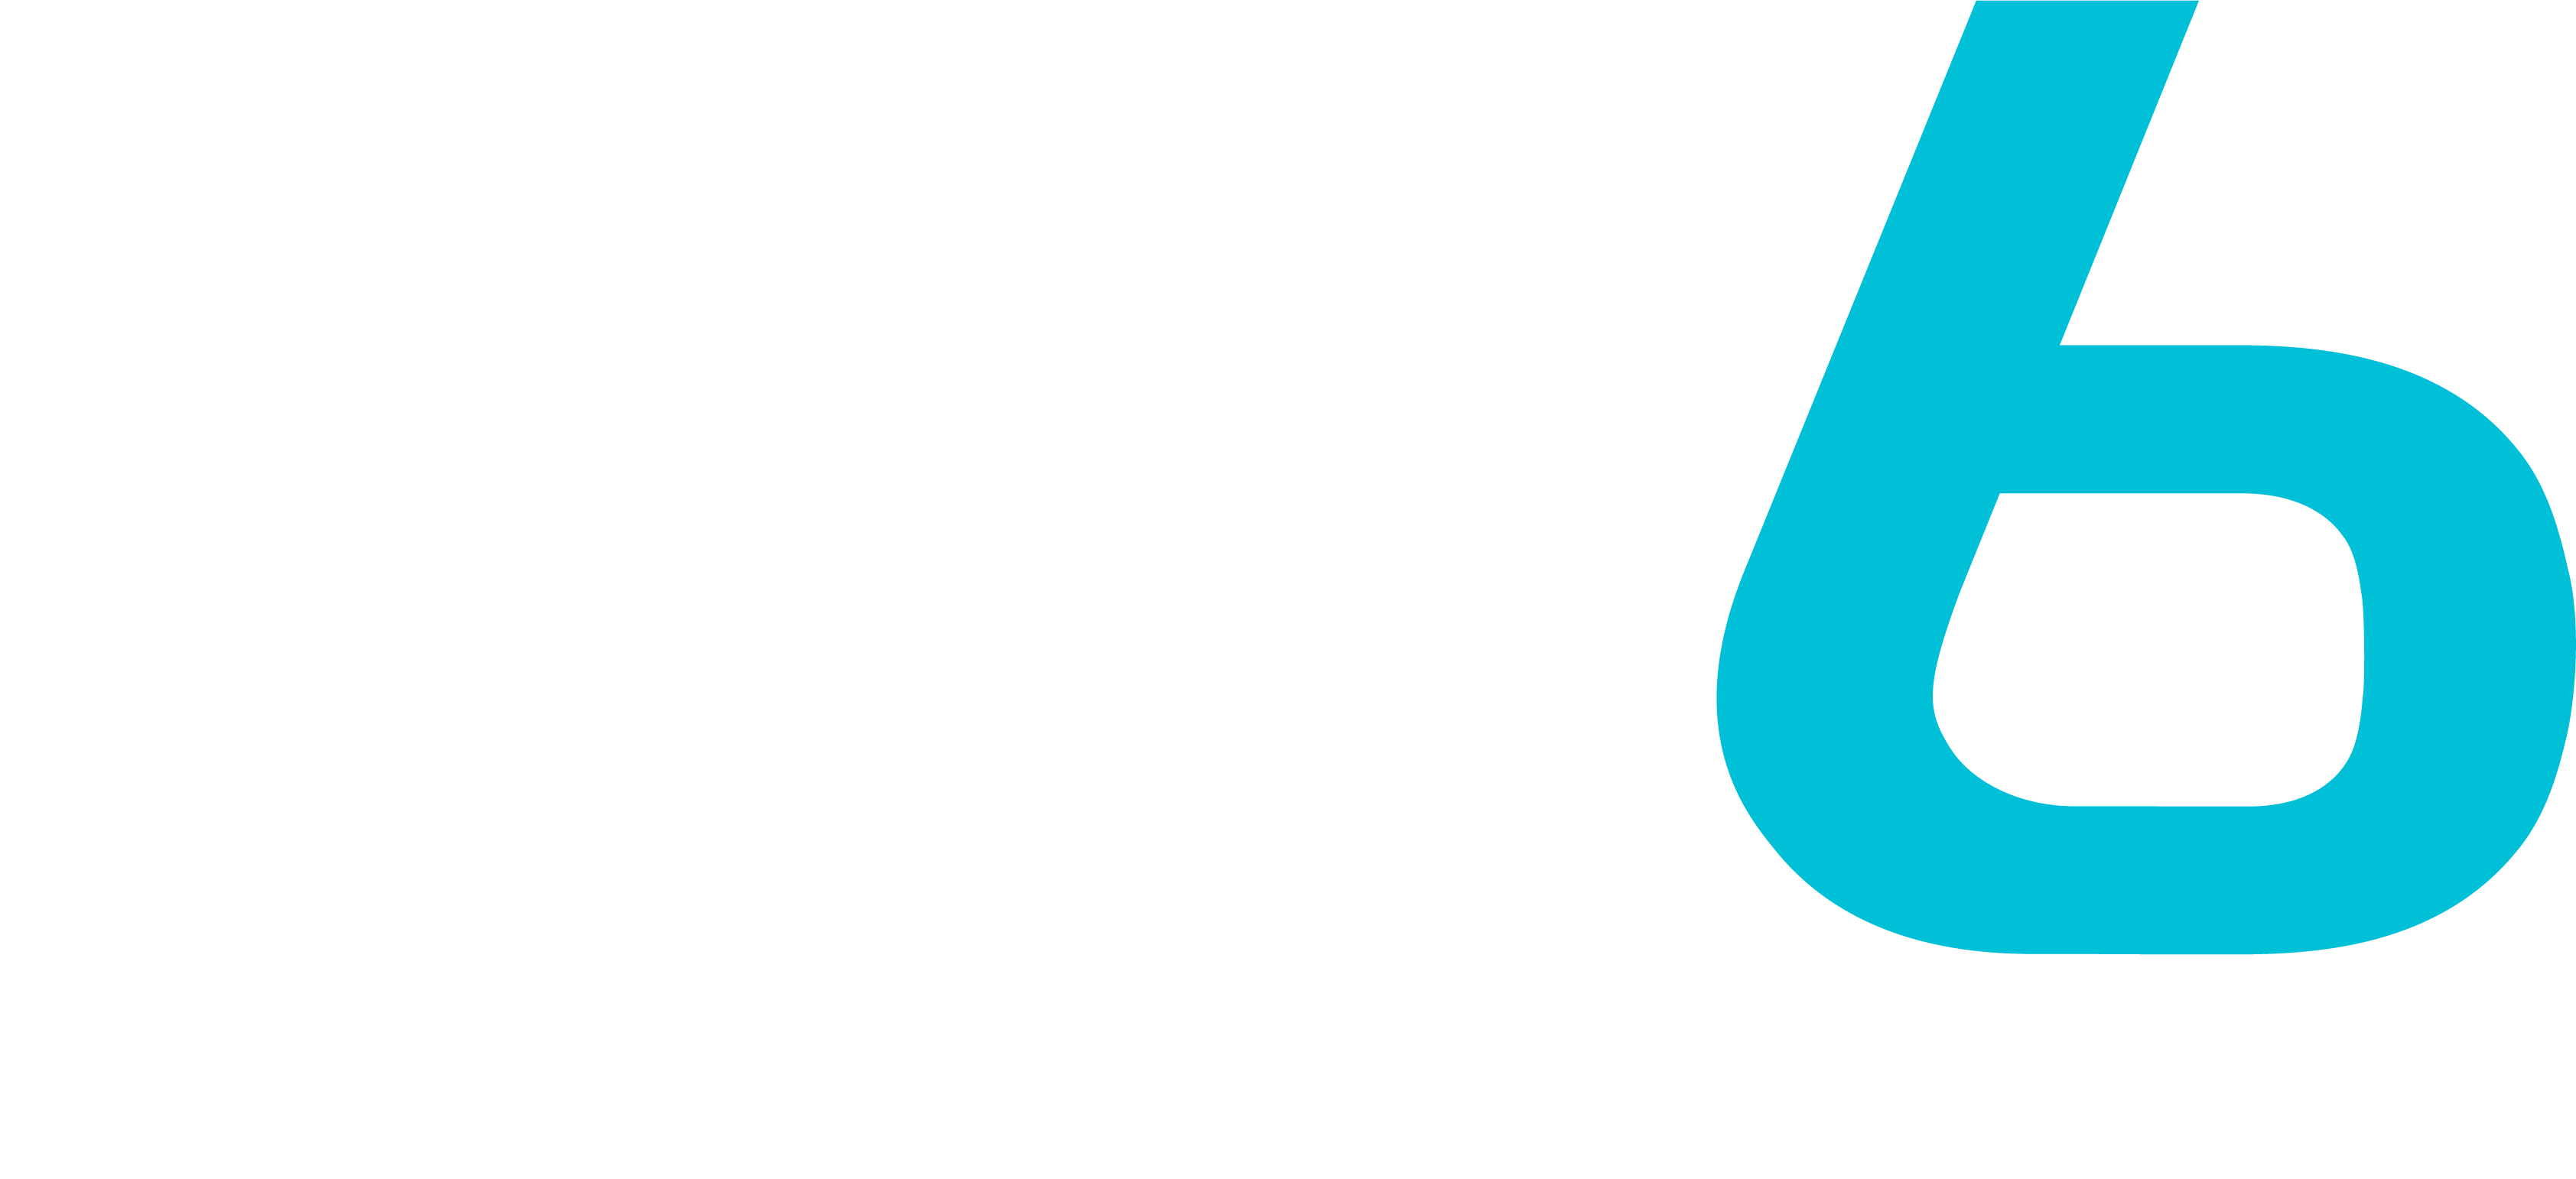 DP6 logo